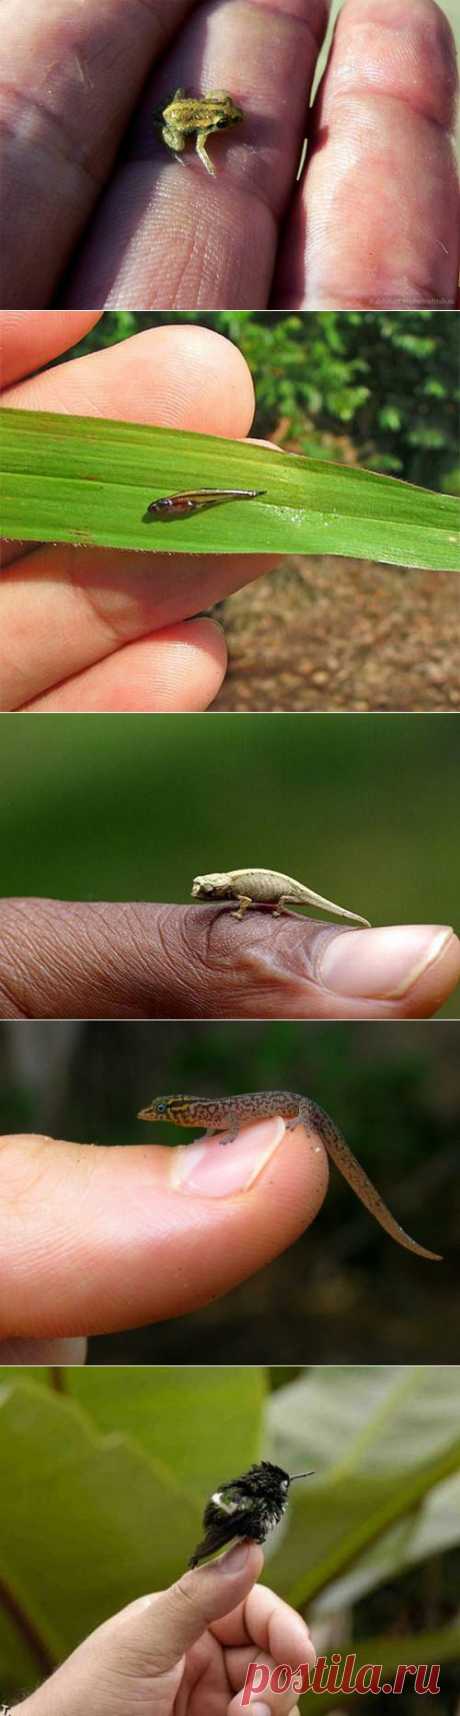 Самые маленькие представители фауны - Наука и жизнь